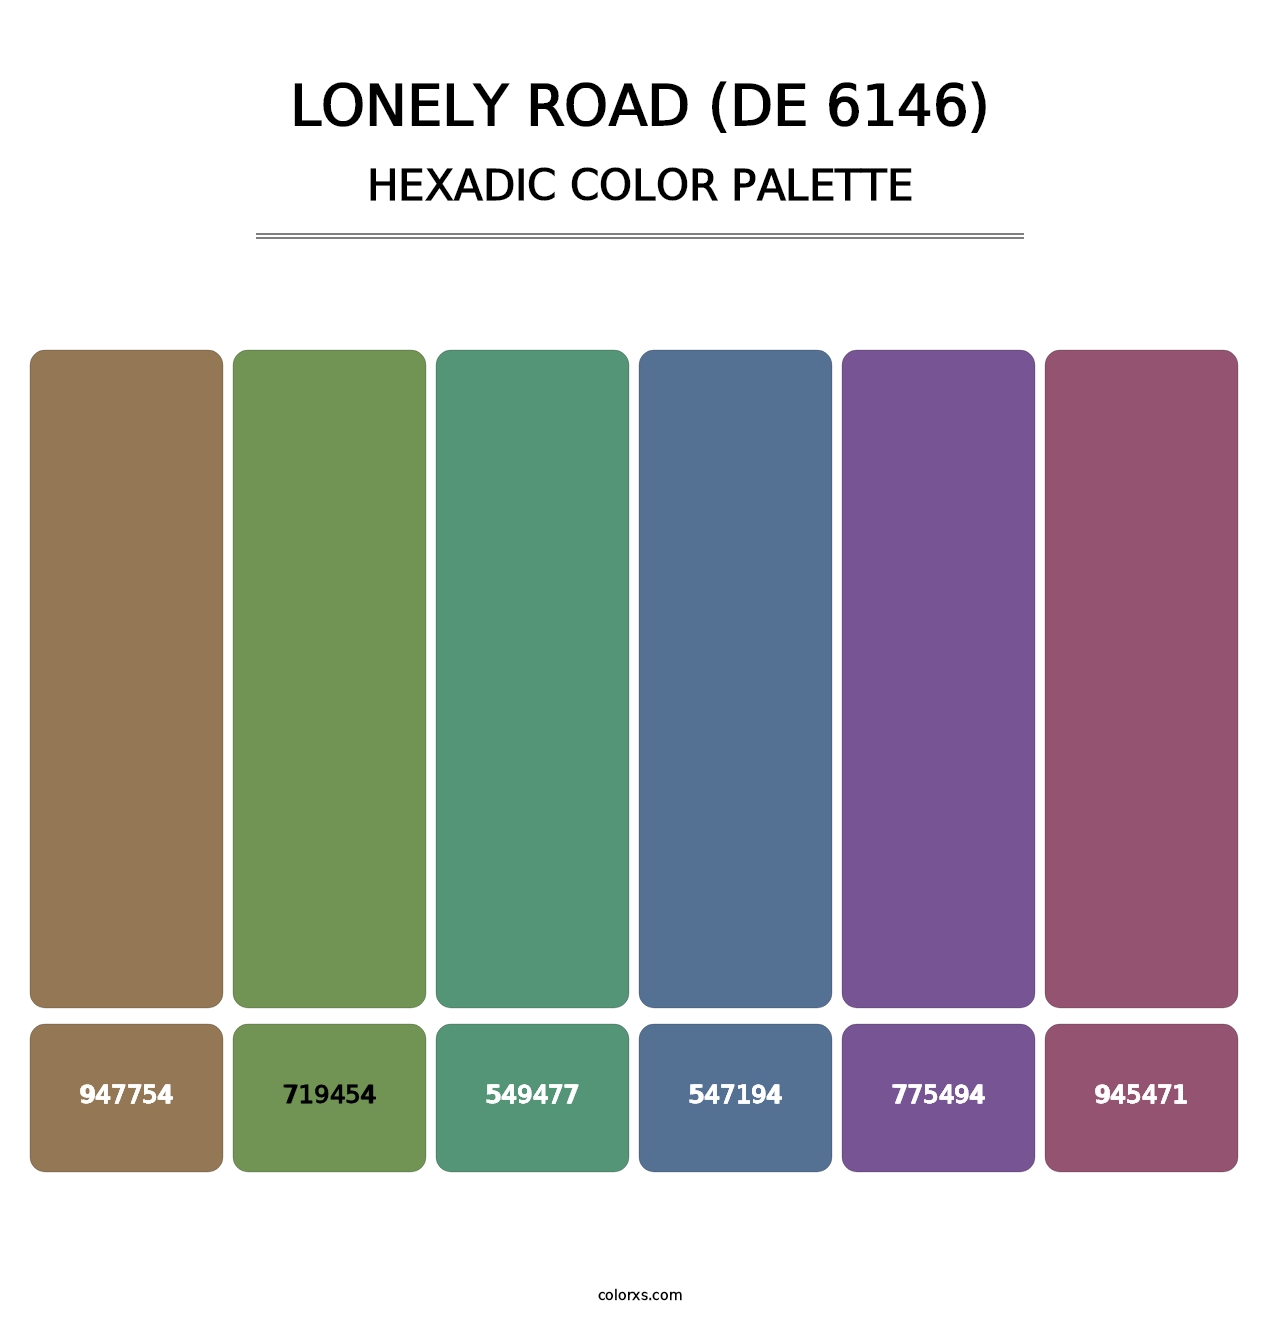 Lonely Road (DE 6146) - Hexadic Color Palette